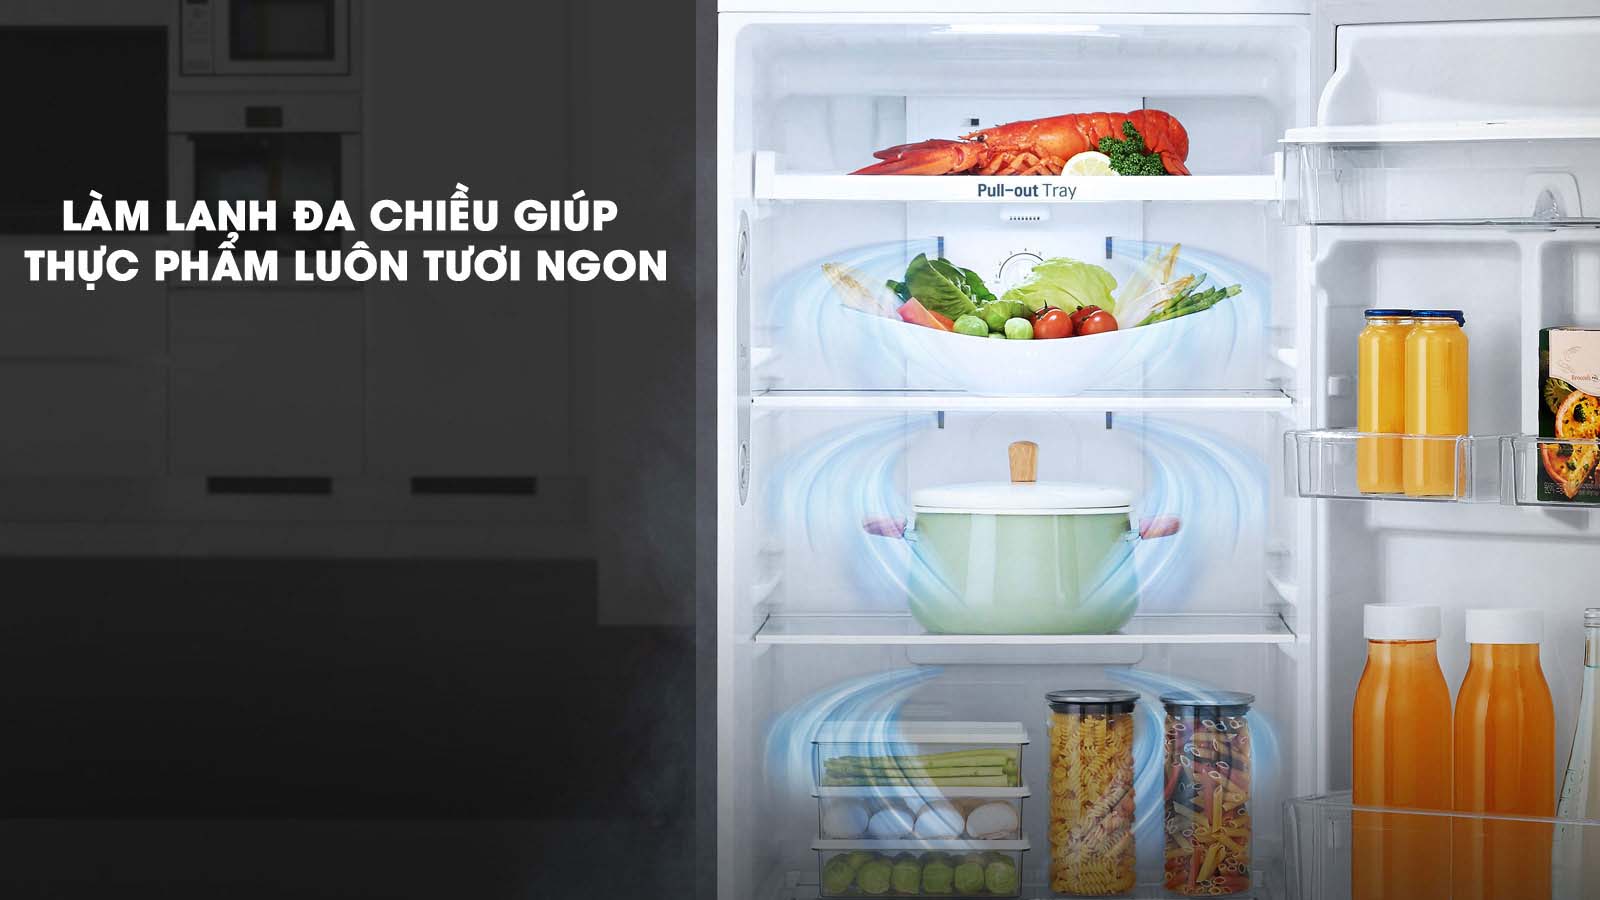 Làm lạnh hiệu quả với luồng khí lạnh đa chiều - Tủ lạnh LG Inverter 255 lít GN-M255PS